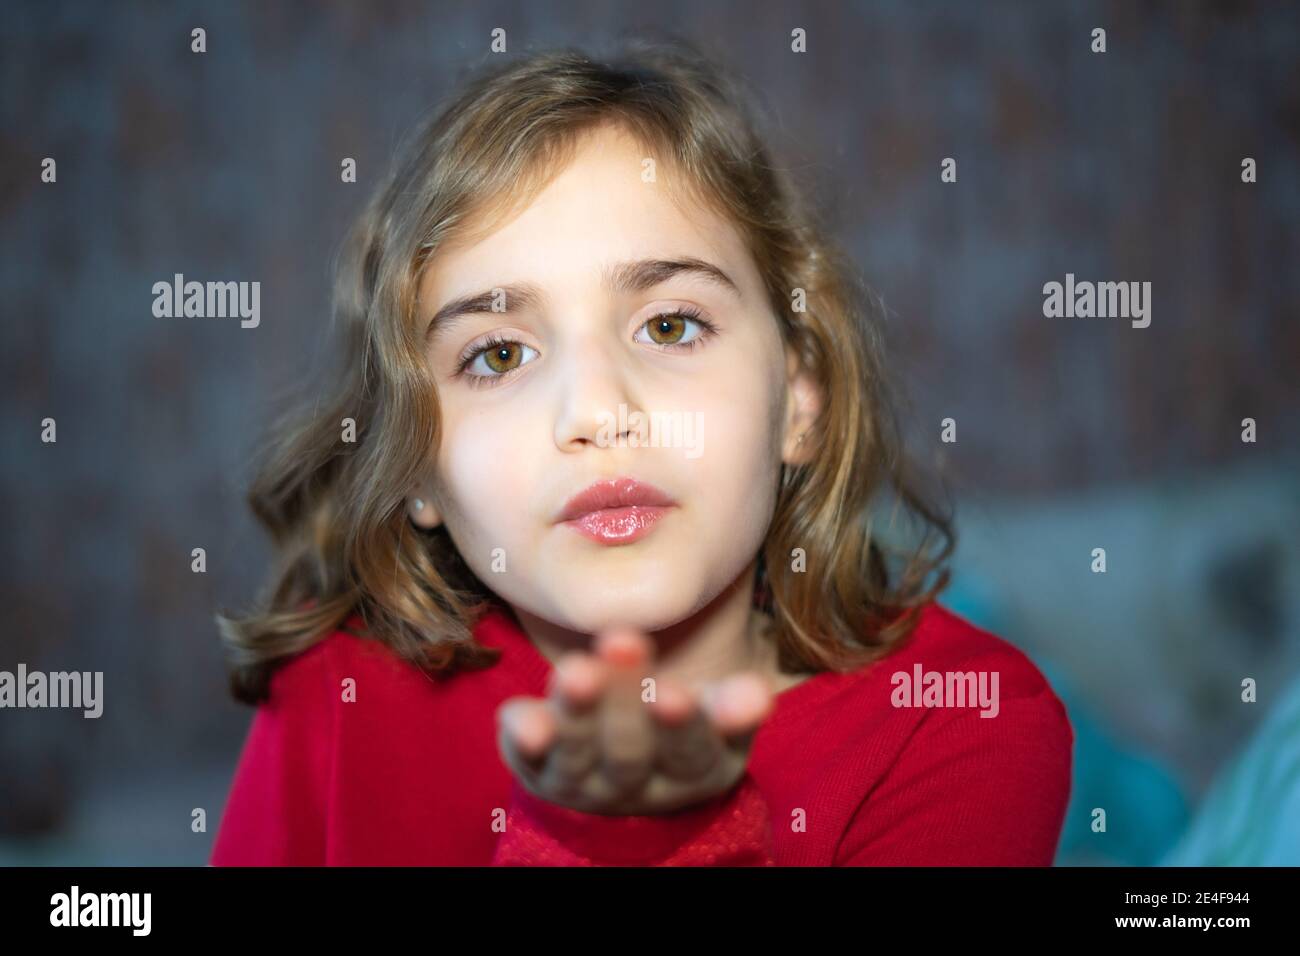 petite fille envoyant un baiser avec sa main à l'appareil photo, portrait avec une mise au point sélective. Vêtu d'un pull rouge. Banque D'Images